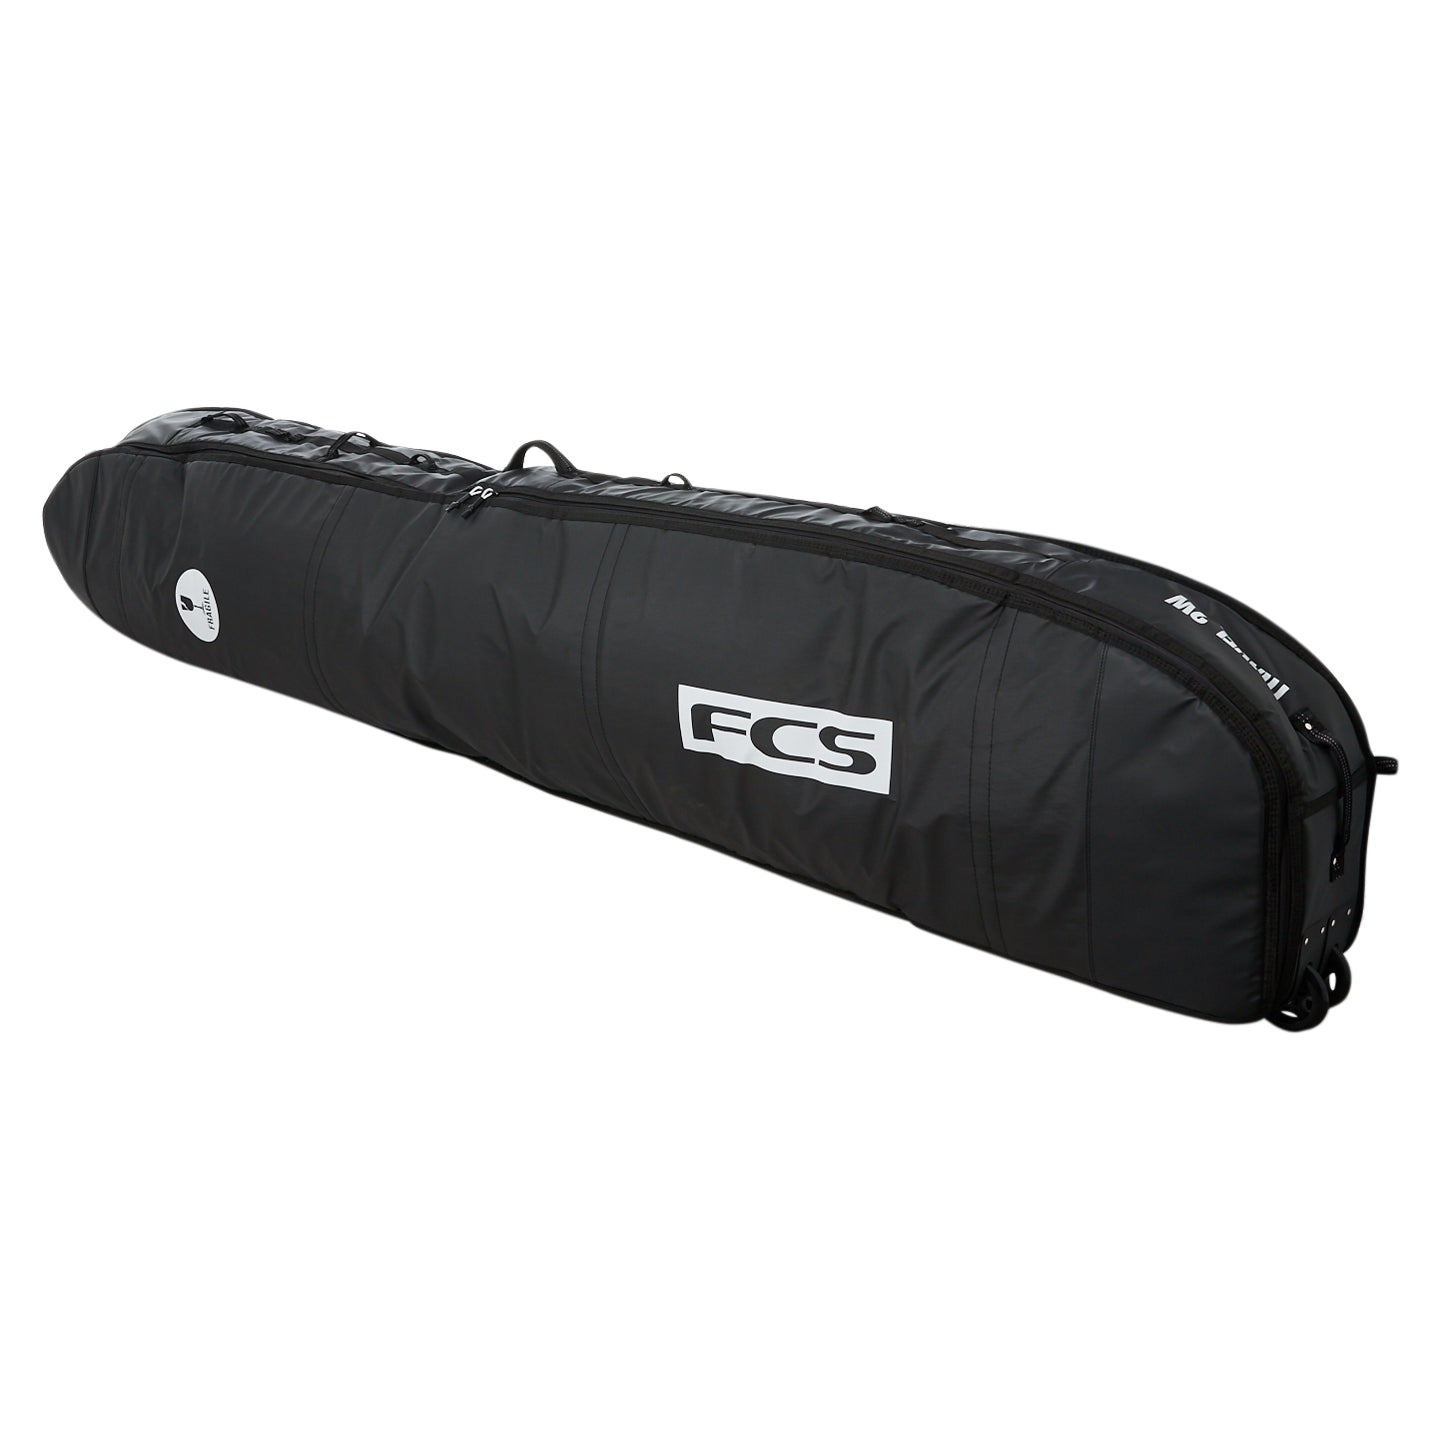 FCS Travel 2 Longboard Boardbag Black-Grey 9ft2in